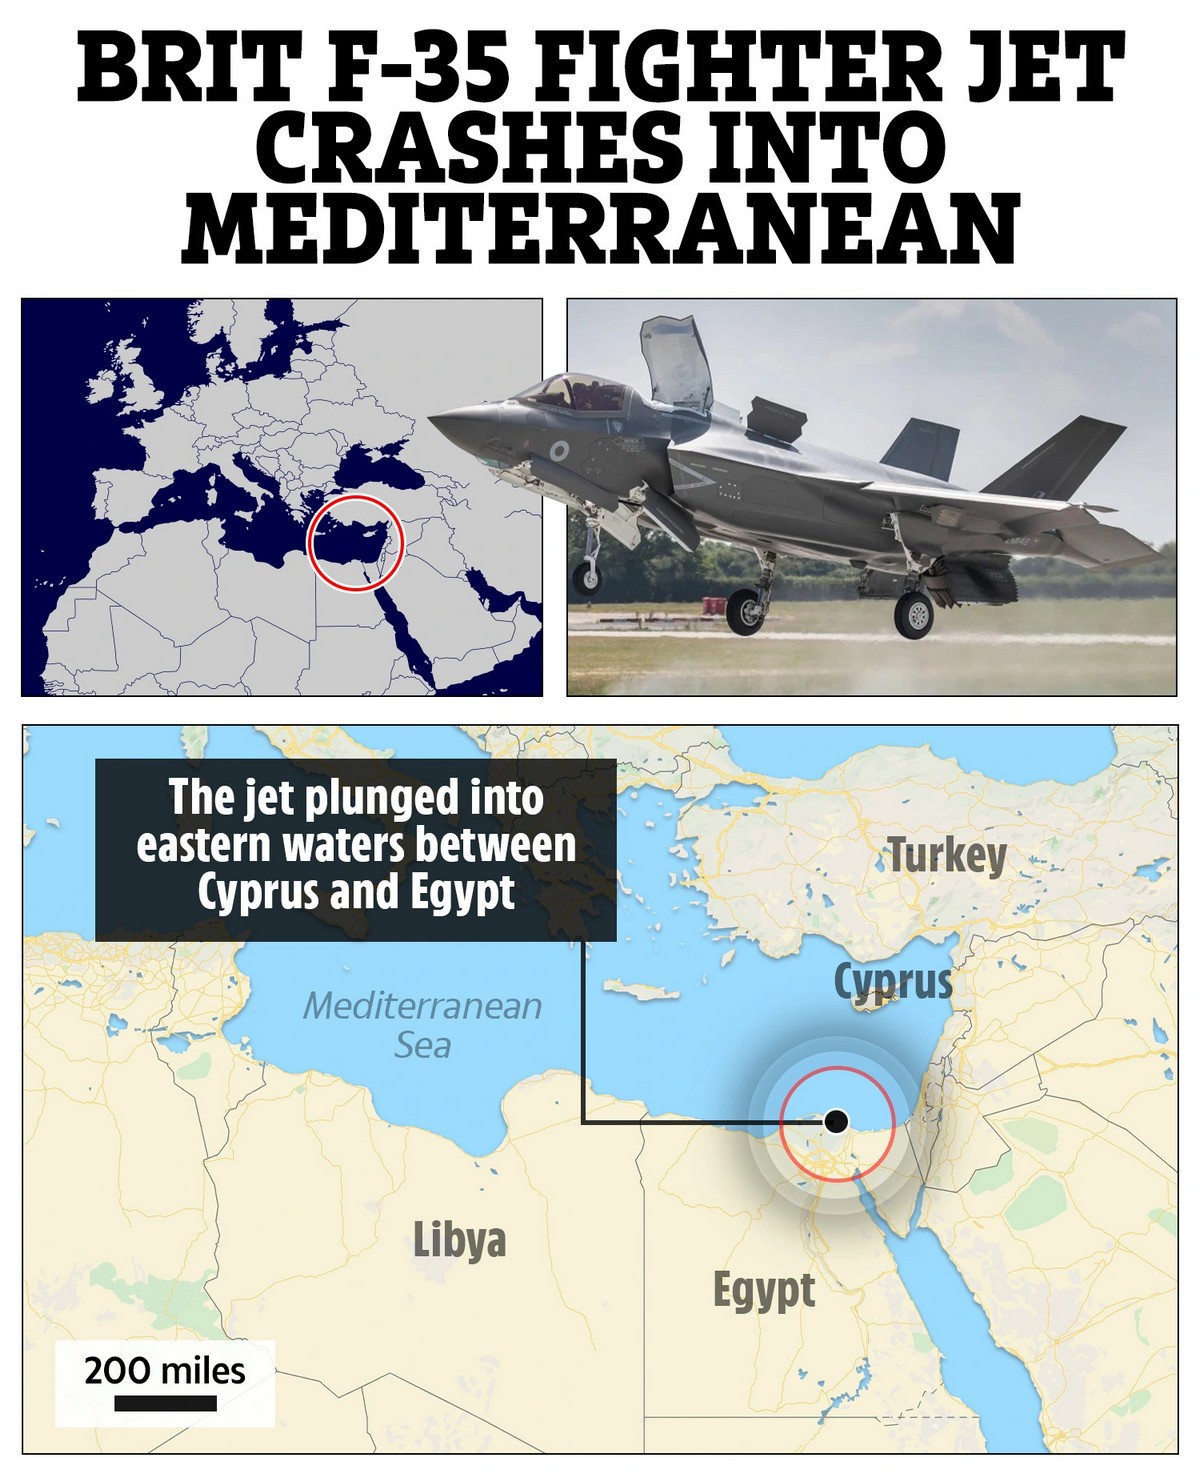 Газета The Sun о крушении британского истребителя F-35B от 17 ноября 2021 года в Средиземном море.